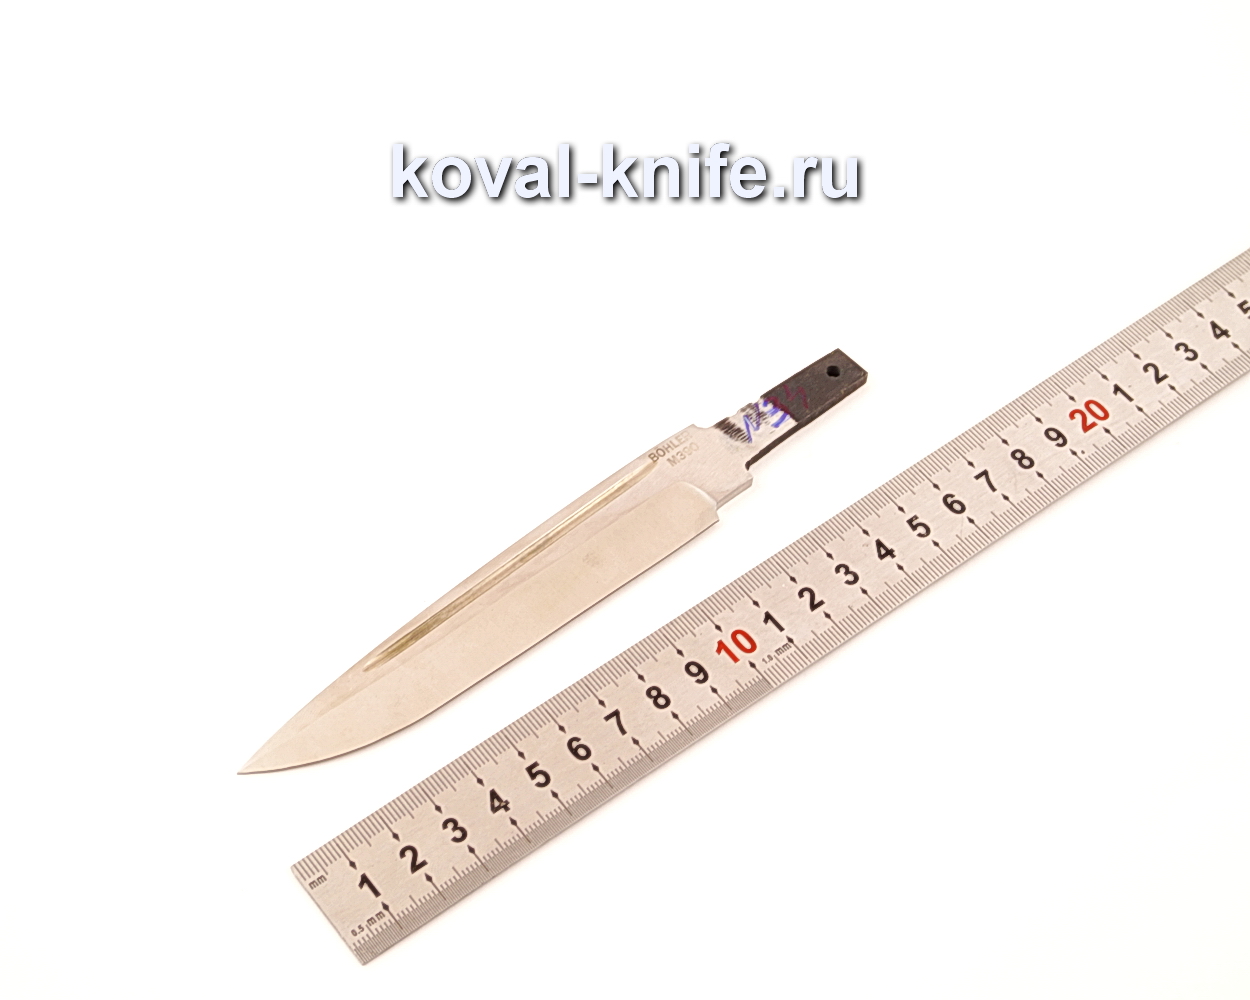 Клинок для ножа из порошковой стали Bohler M390 N34